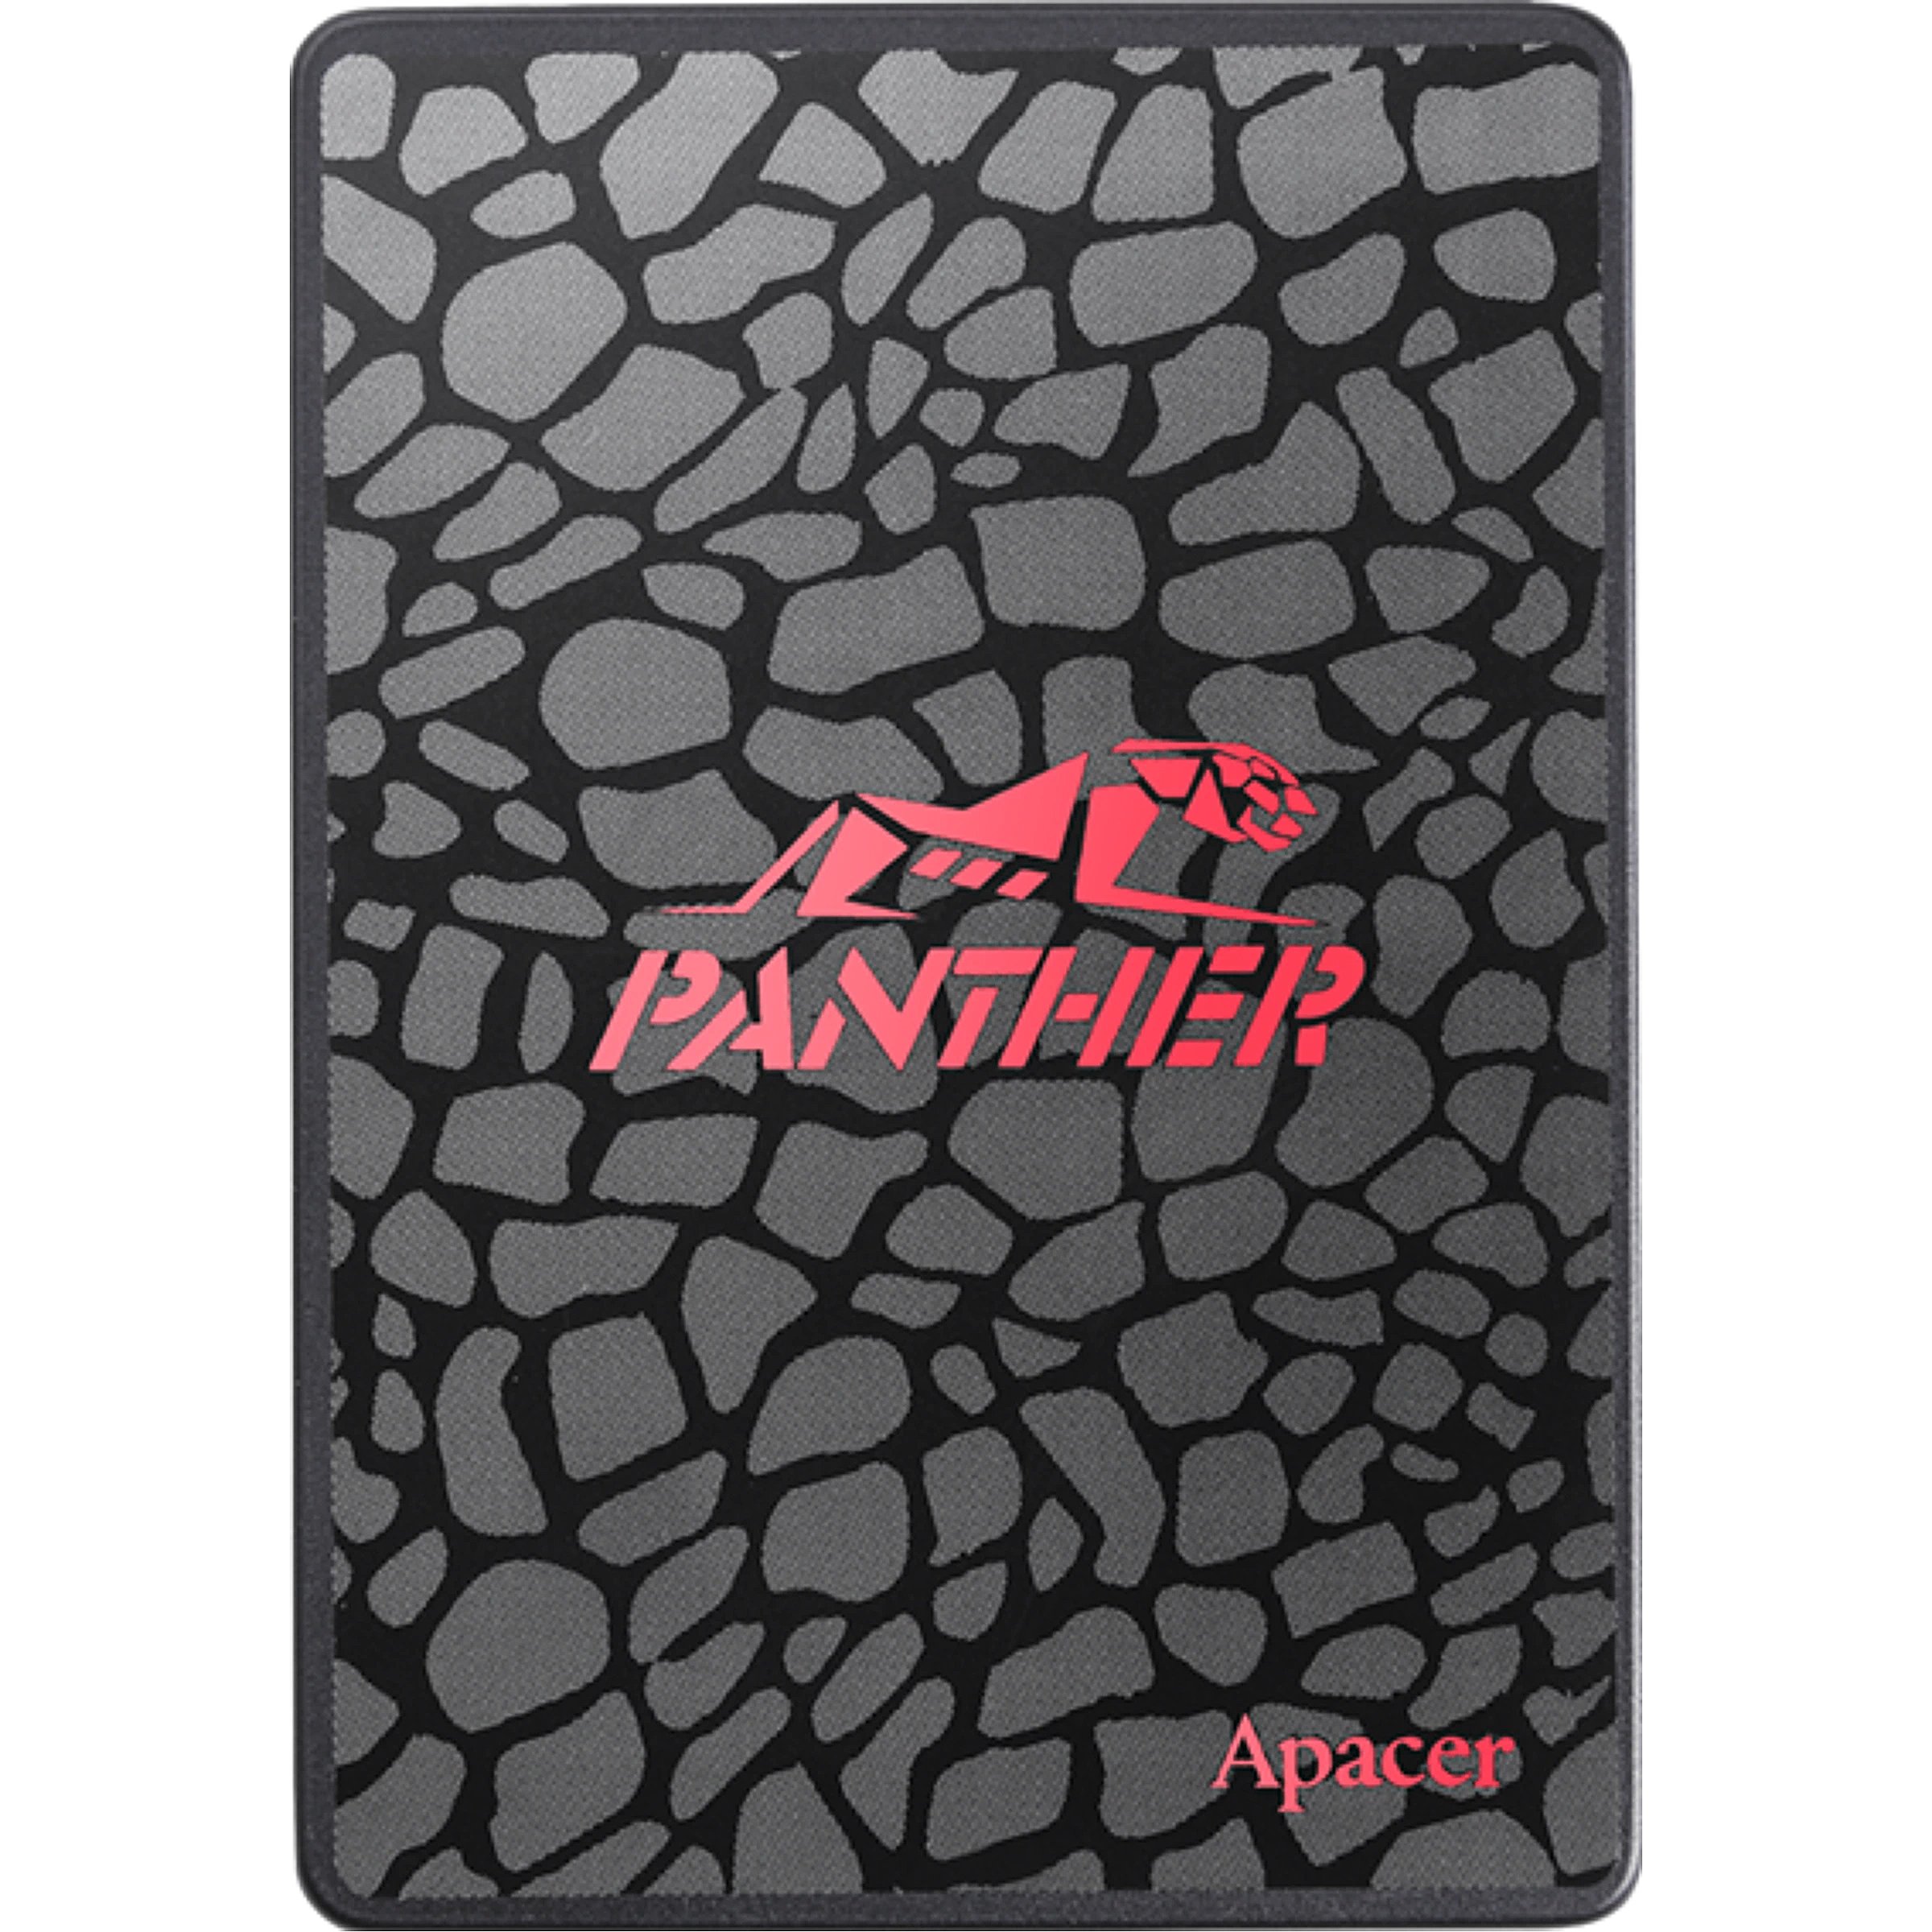 Ssd накопитель apacer panther. Твердотельный накопитель Apacer as350 Panther SSD 240gb. Apacer as350 120gb. 128 ГБ SSD-накопитель Apacer as350 Panther. Жесткий диск Apacer Panther as350 256gb.